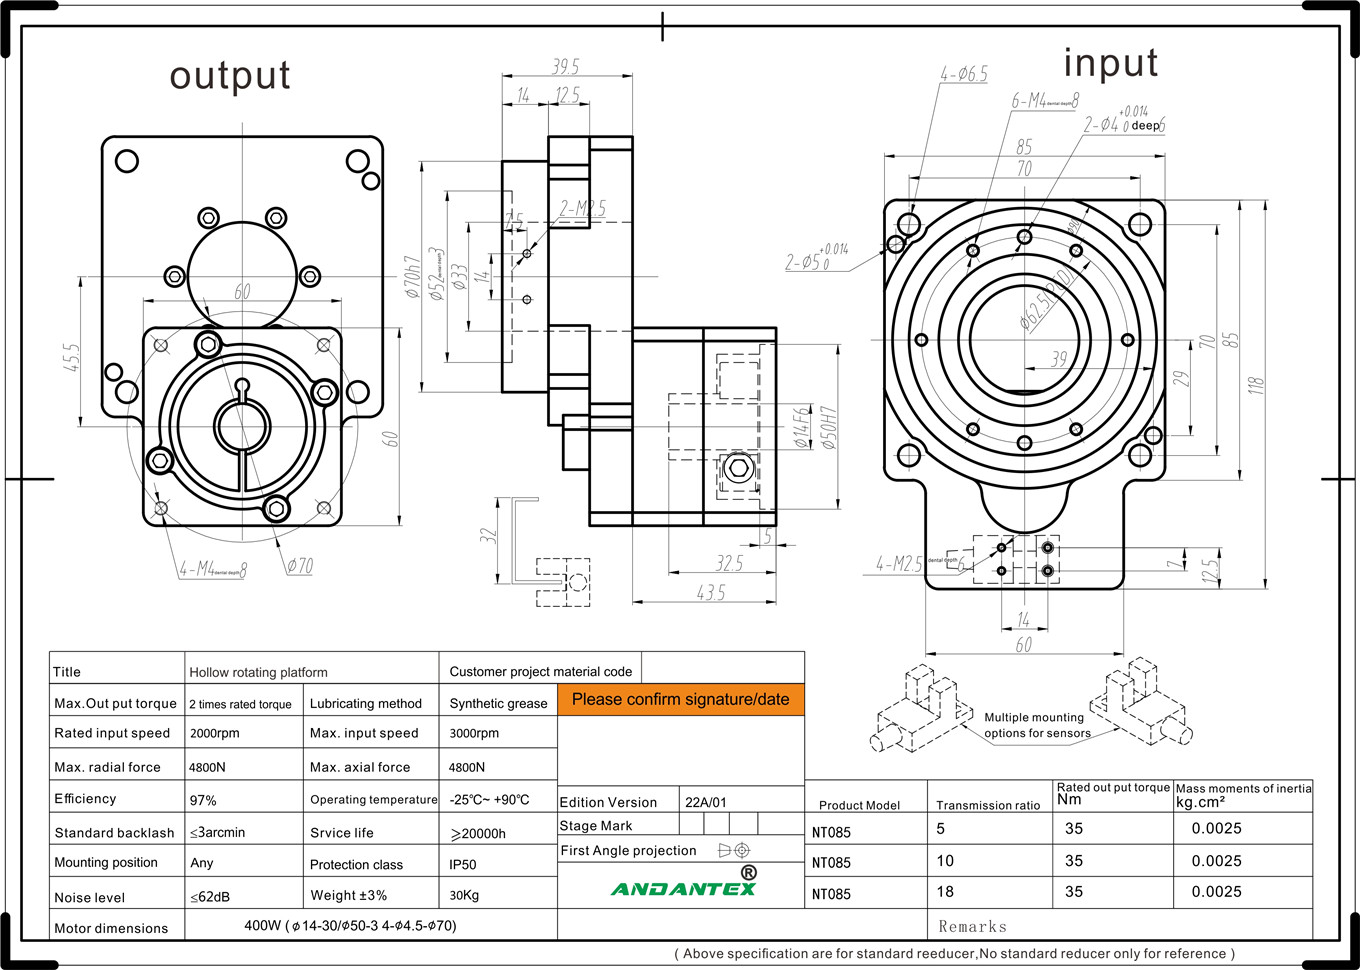 ANDANTEX NT085-5 stage rotativu cavu in l'industria di trasfurmazioni di semiconduttori-01